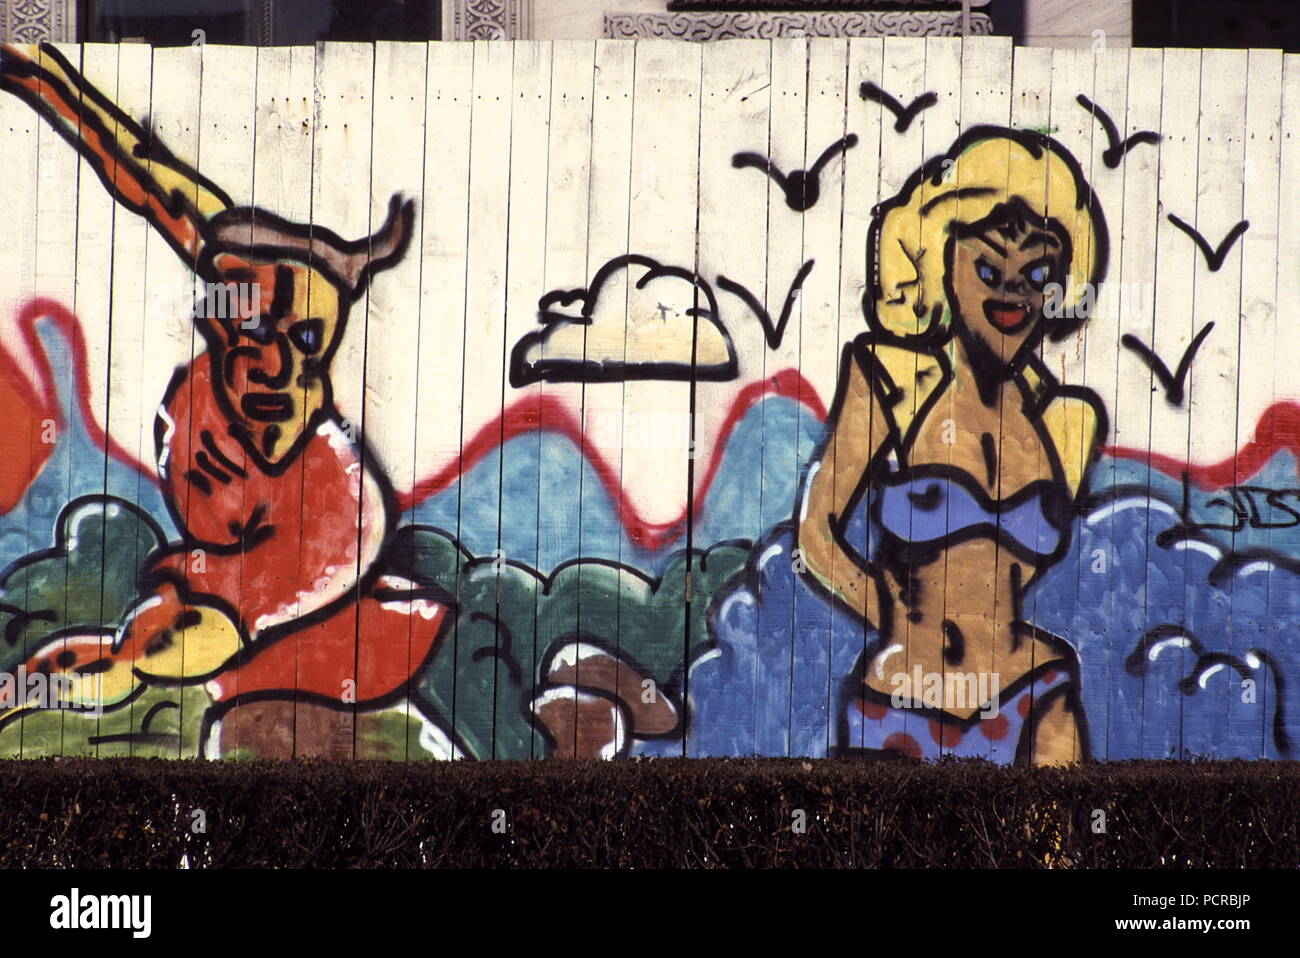 AJAXNETPHOTO. 1985. Parigi, Francia. - Arte dei graffiti - IMMAGINI GRAFITTI dipinta su un sito in costruzione tavolato in legno palizzata nel centro della citta'. Foto:JONATHAN EASTLAND/AJAX REF:891390 Foto Stock